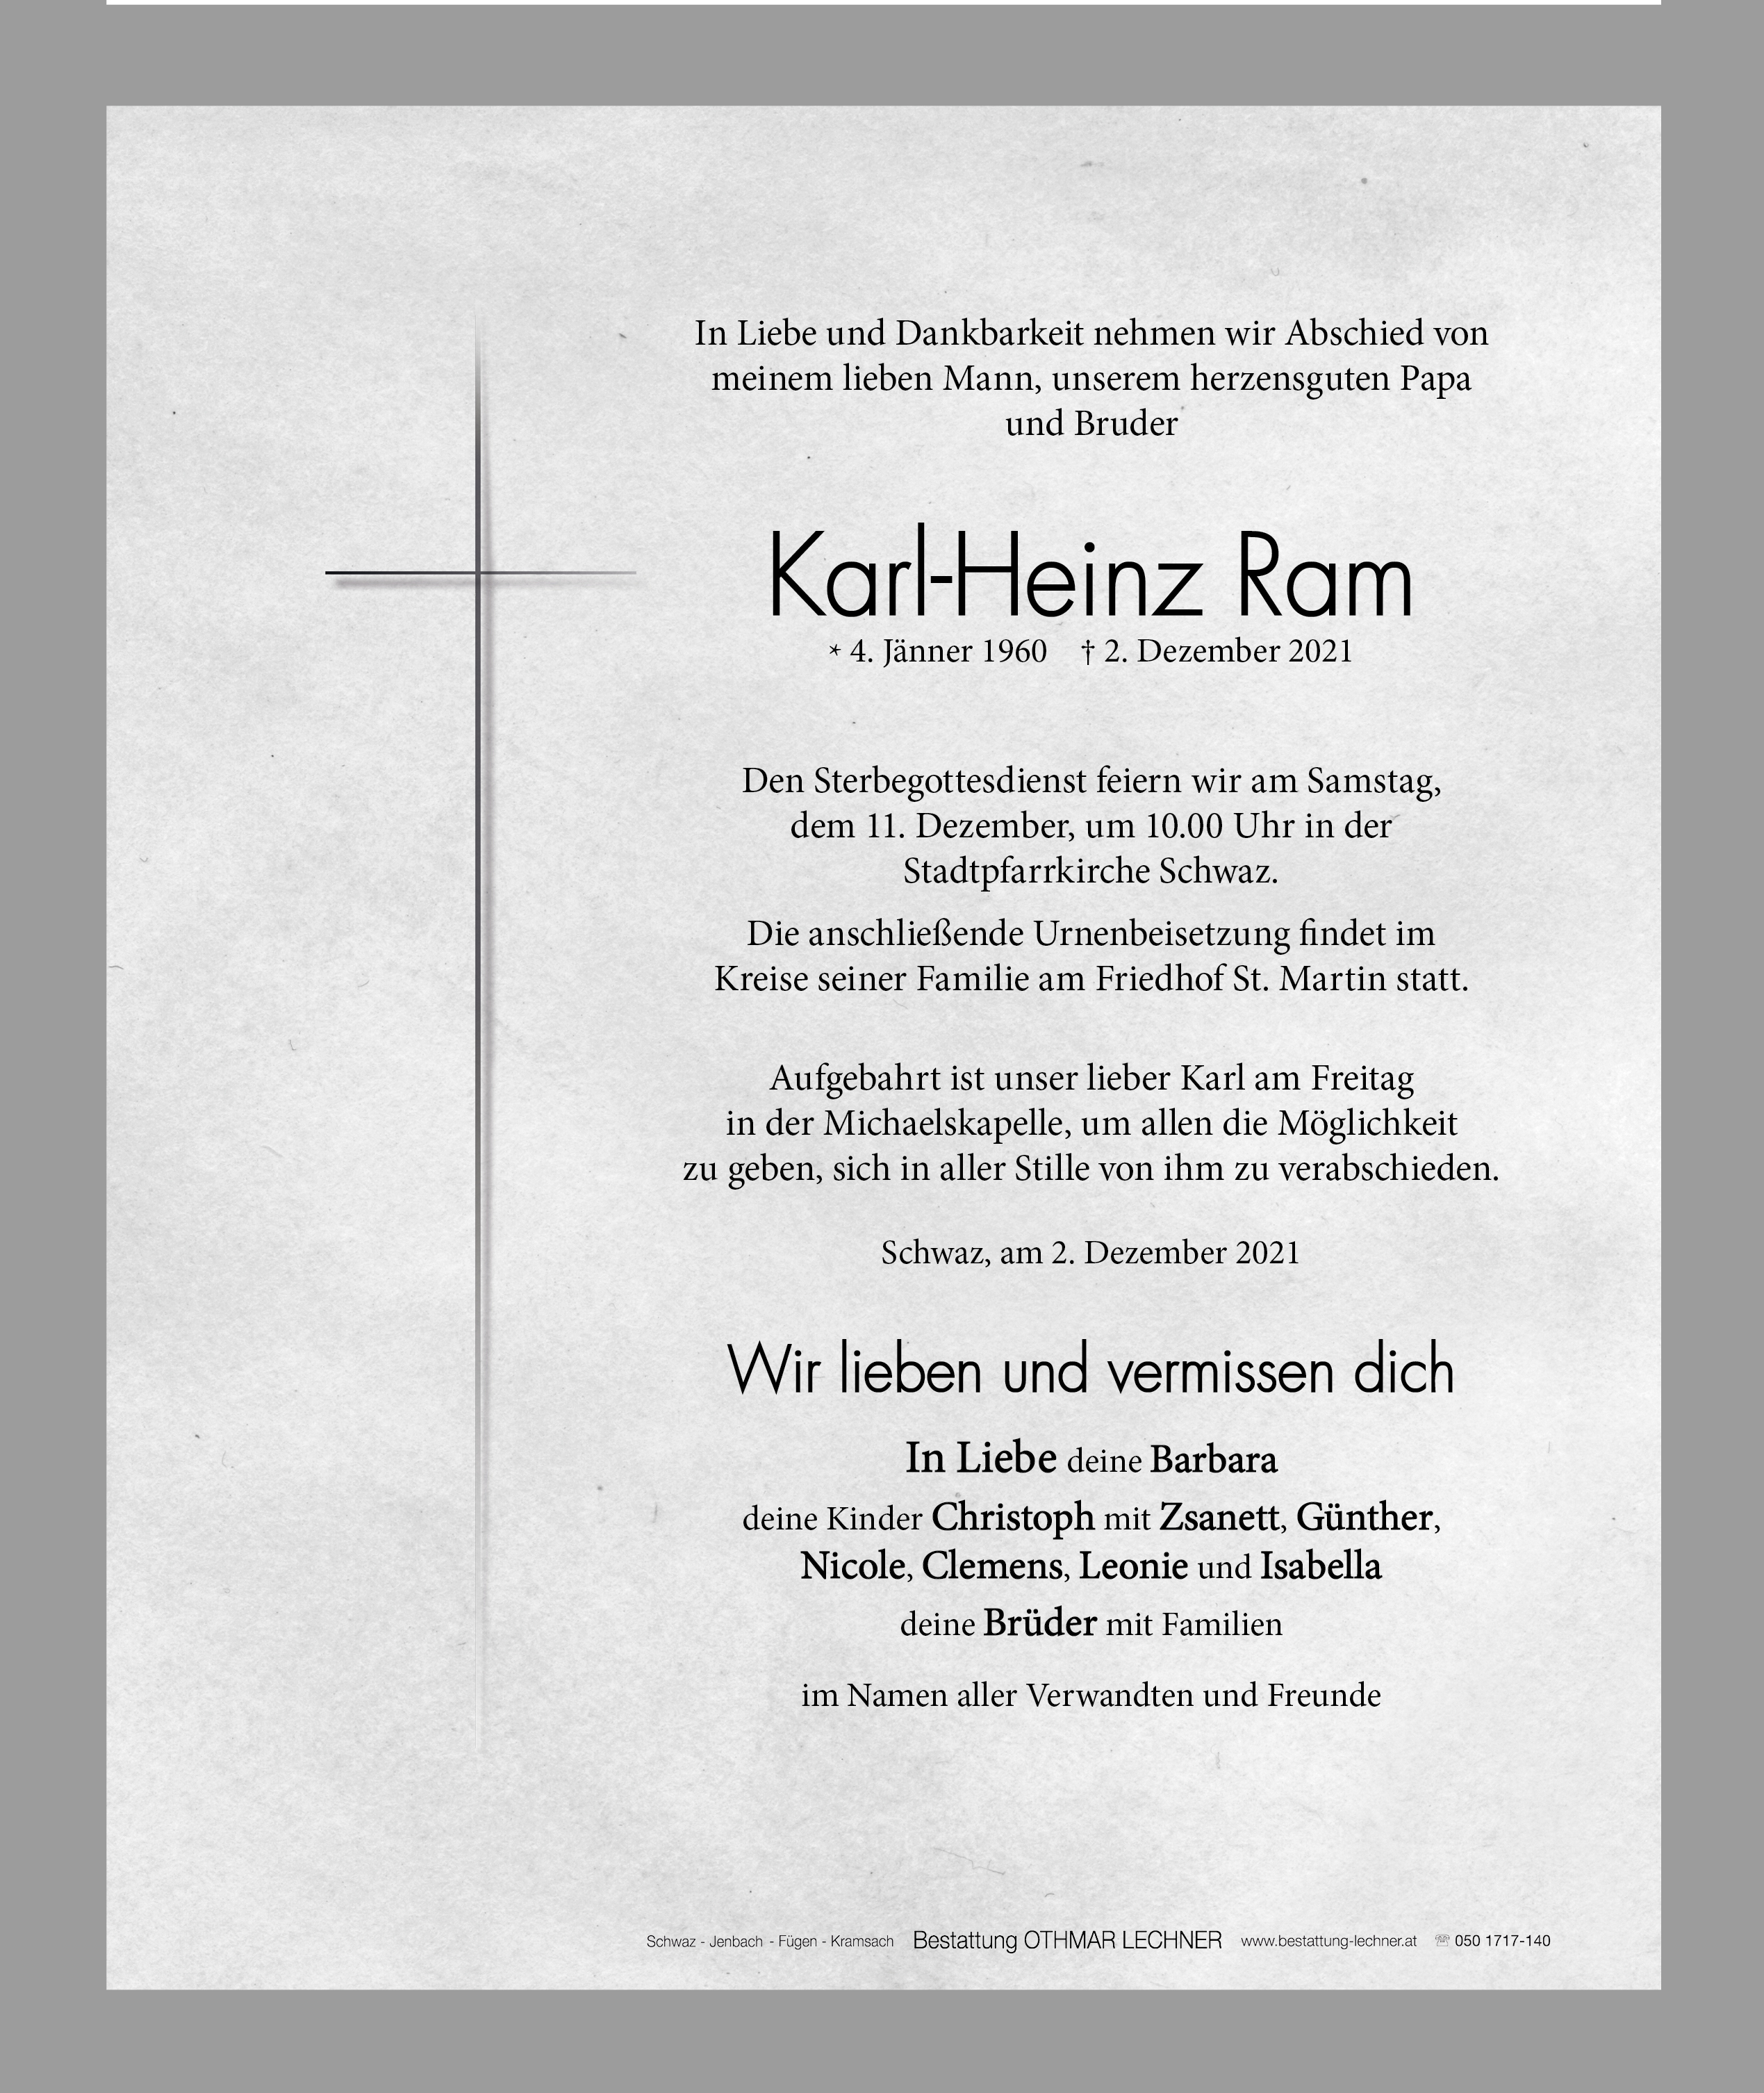 Karl-Heinz Ram